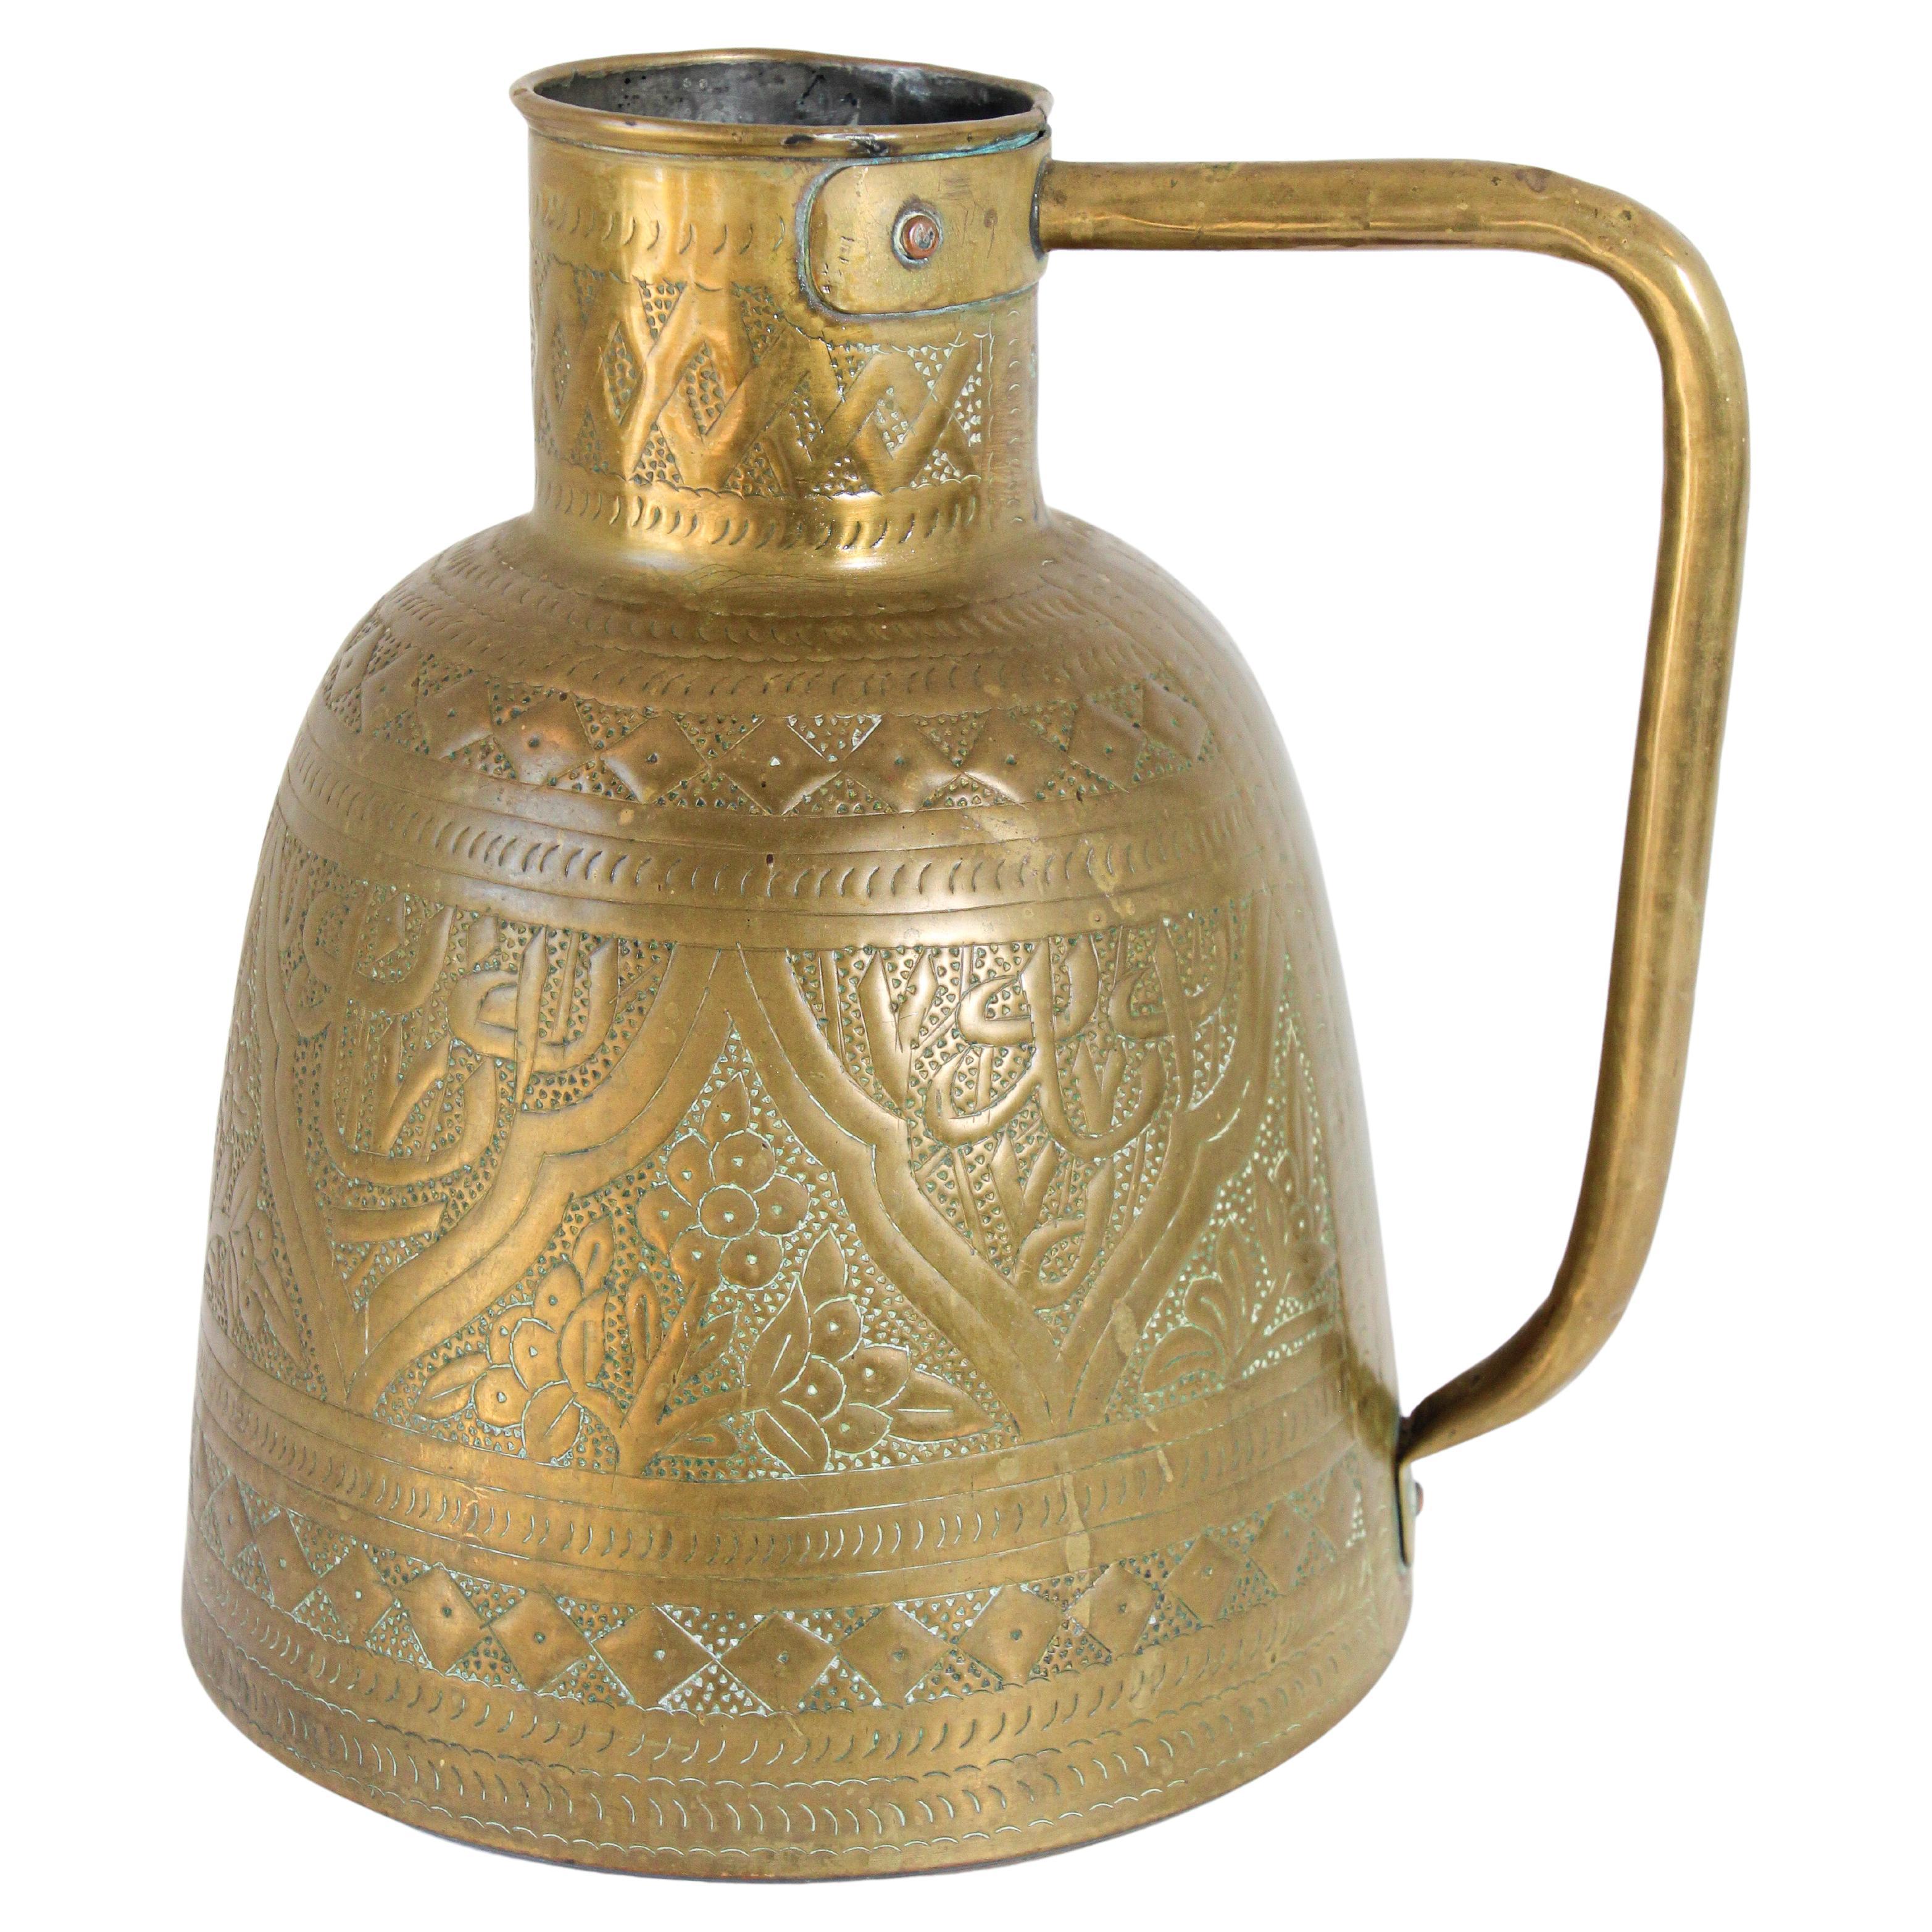 Middle Eastern Arabic Brass Pot